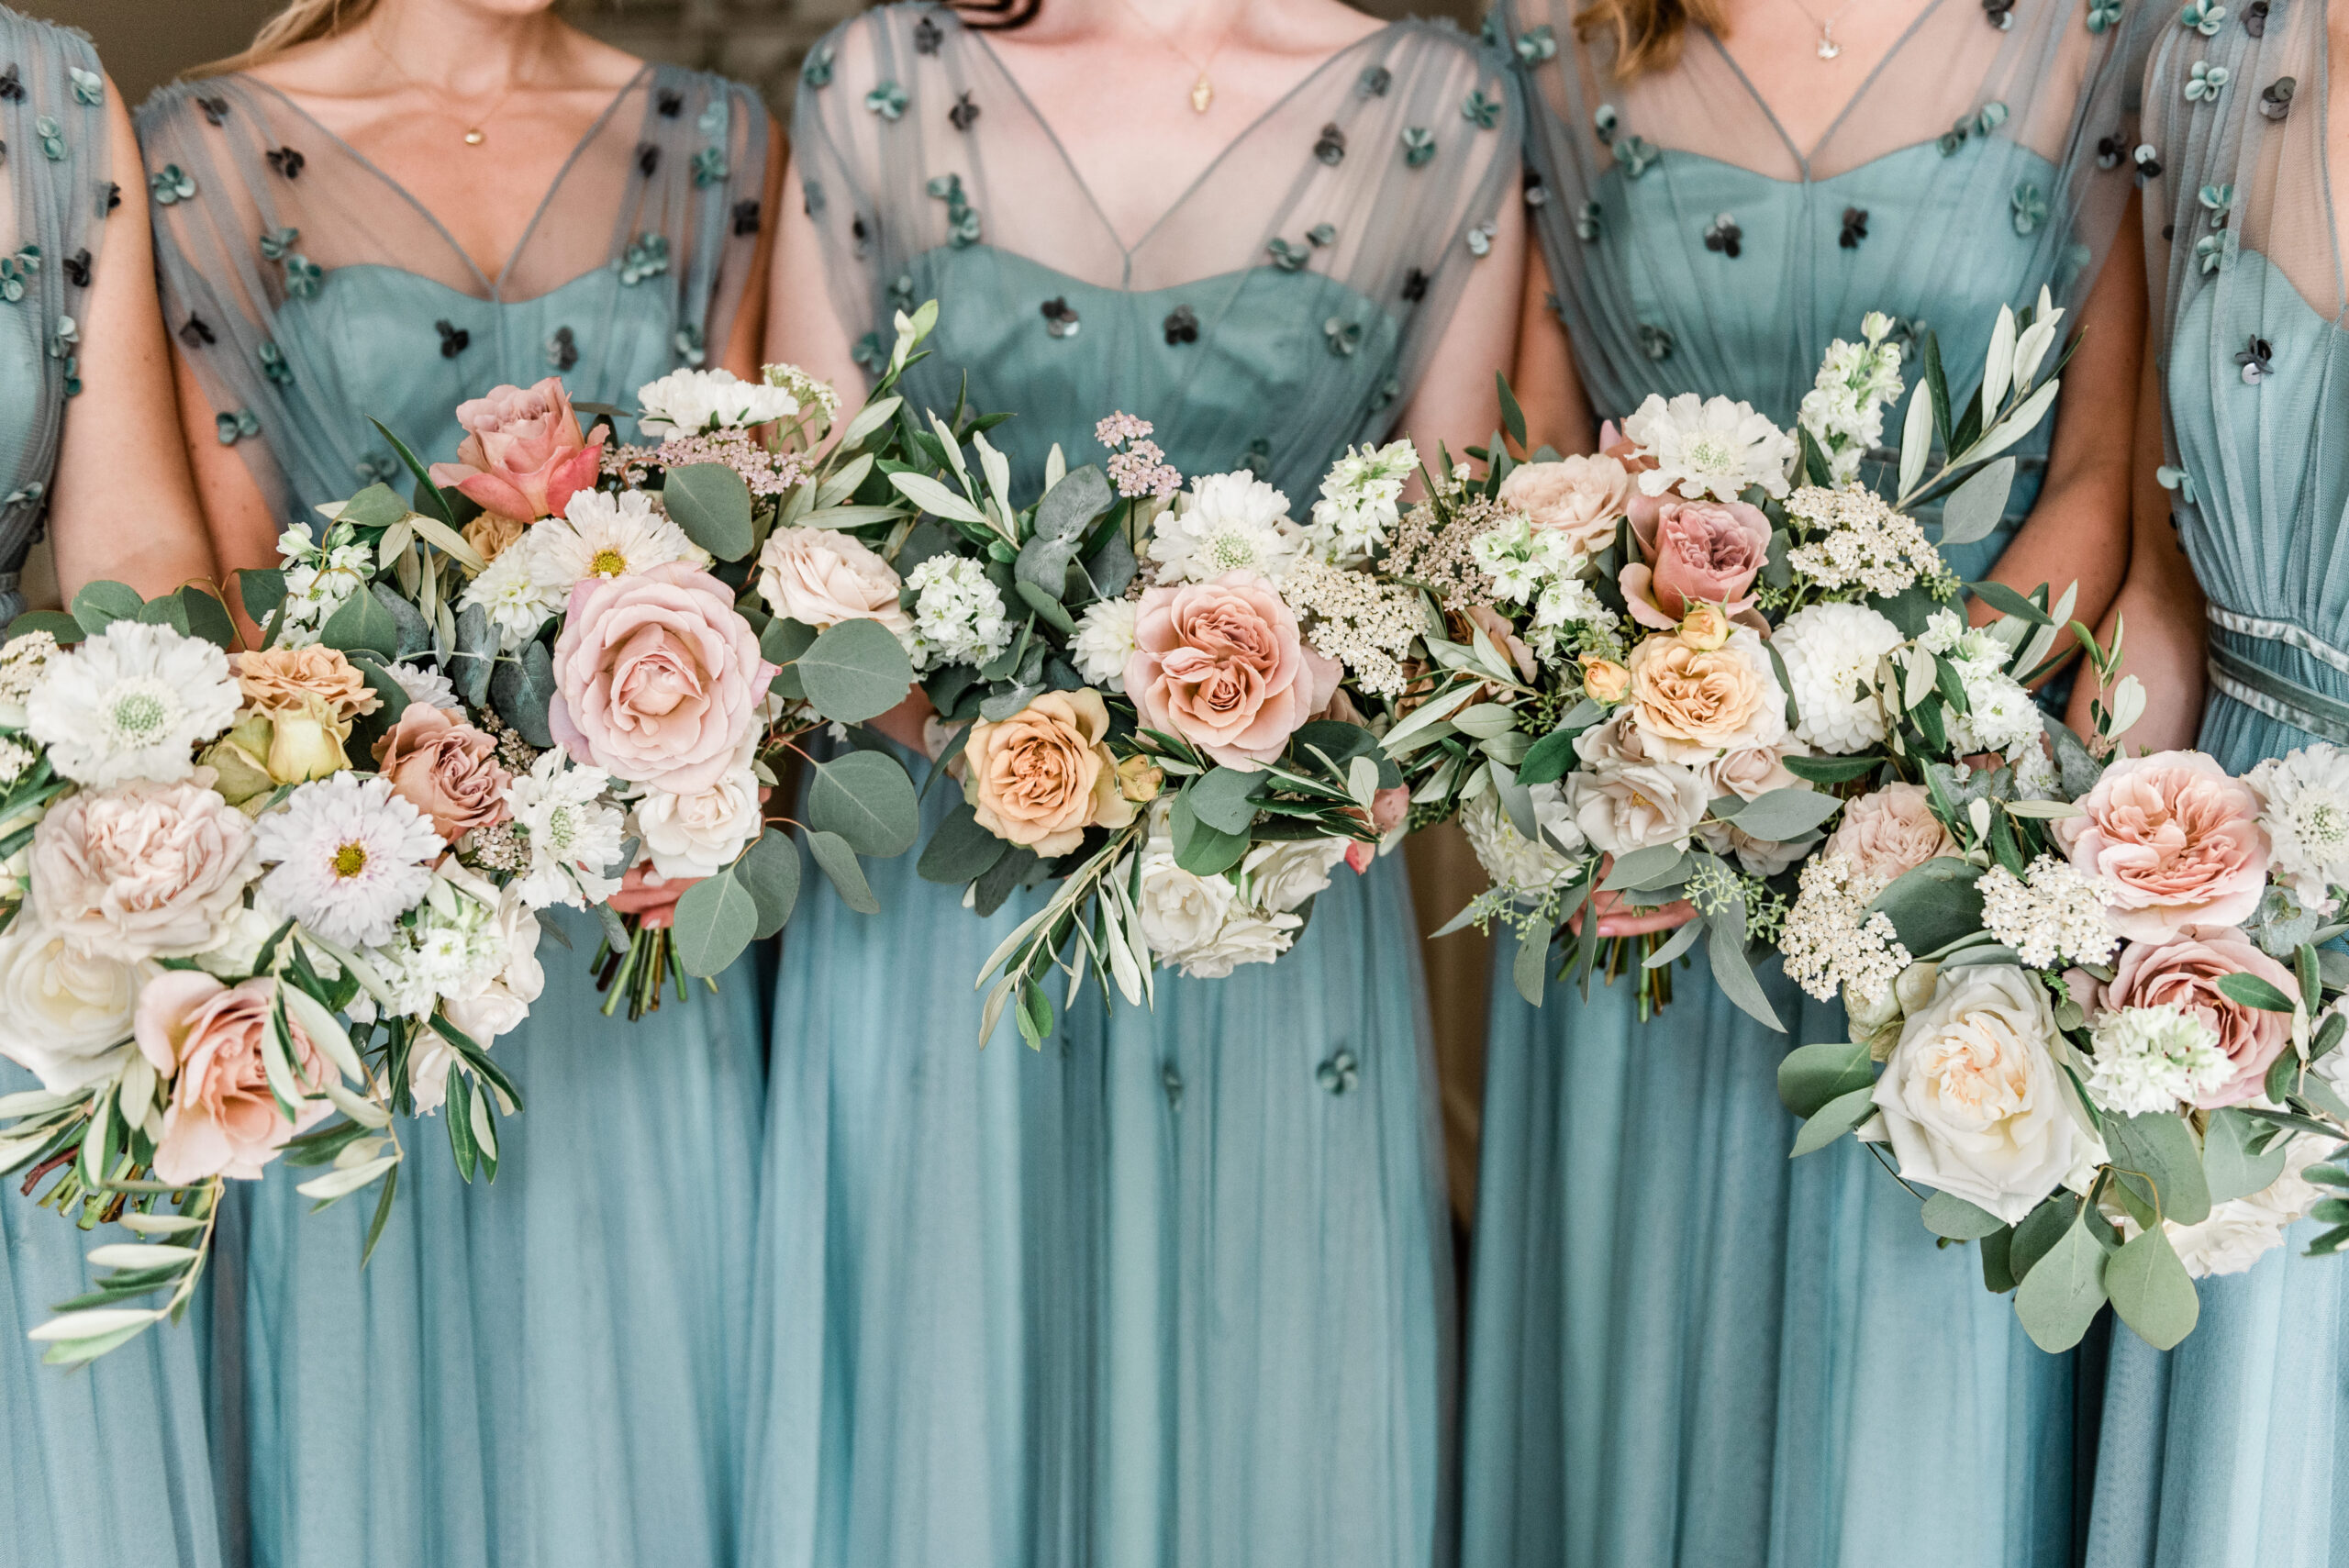 breed vaak Glad Wat is een bridesmaid? | Wit Photography, voor bruiloften en elopements